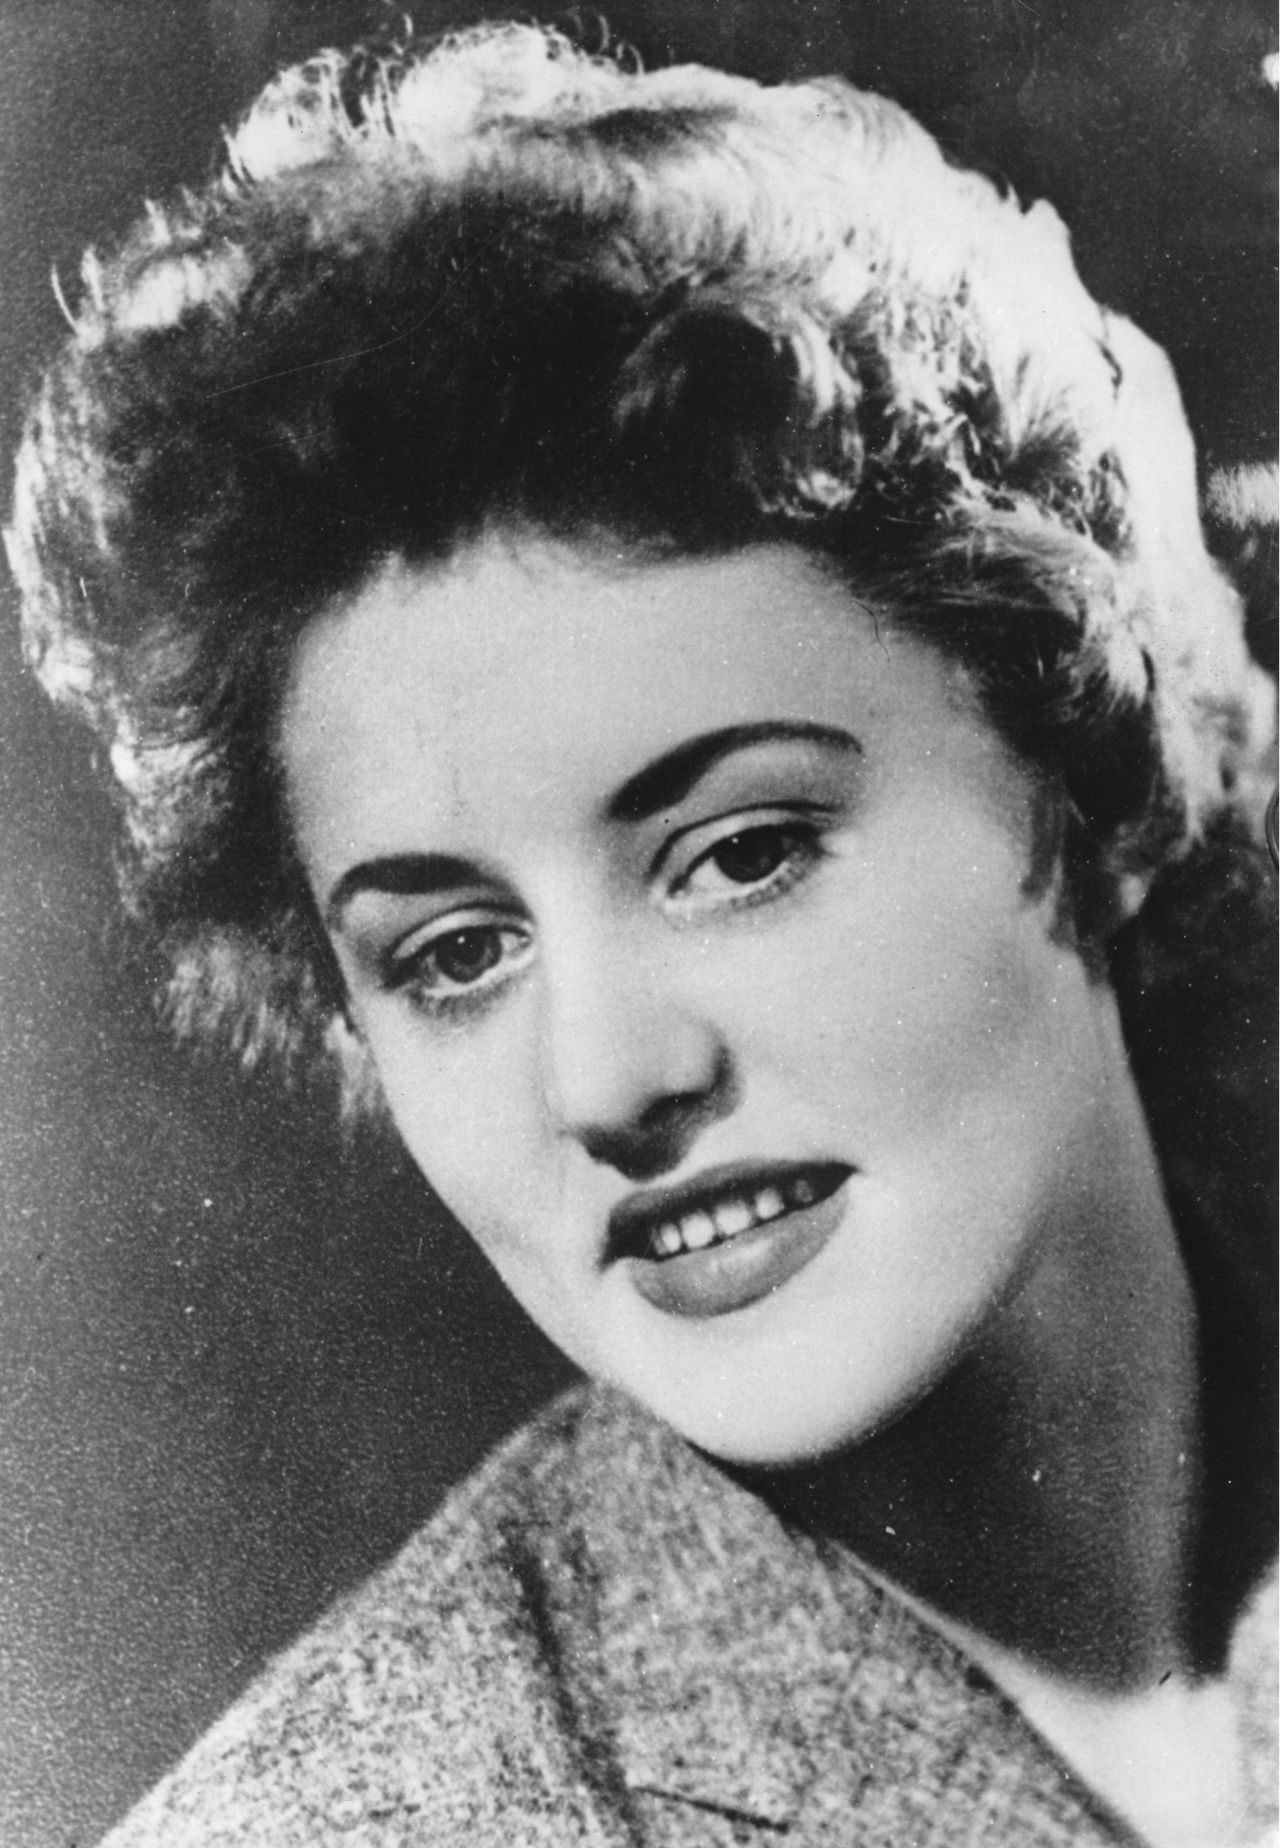 Porträtfoto von Rosemarie Nitribitt, ca. 1955.